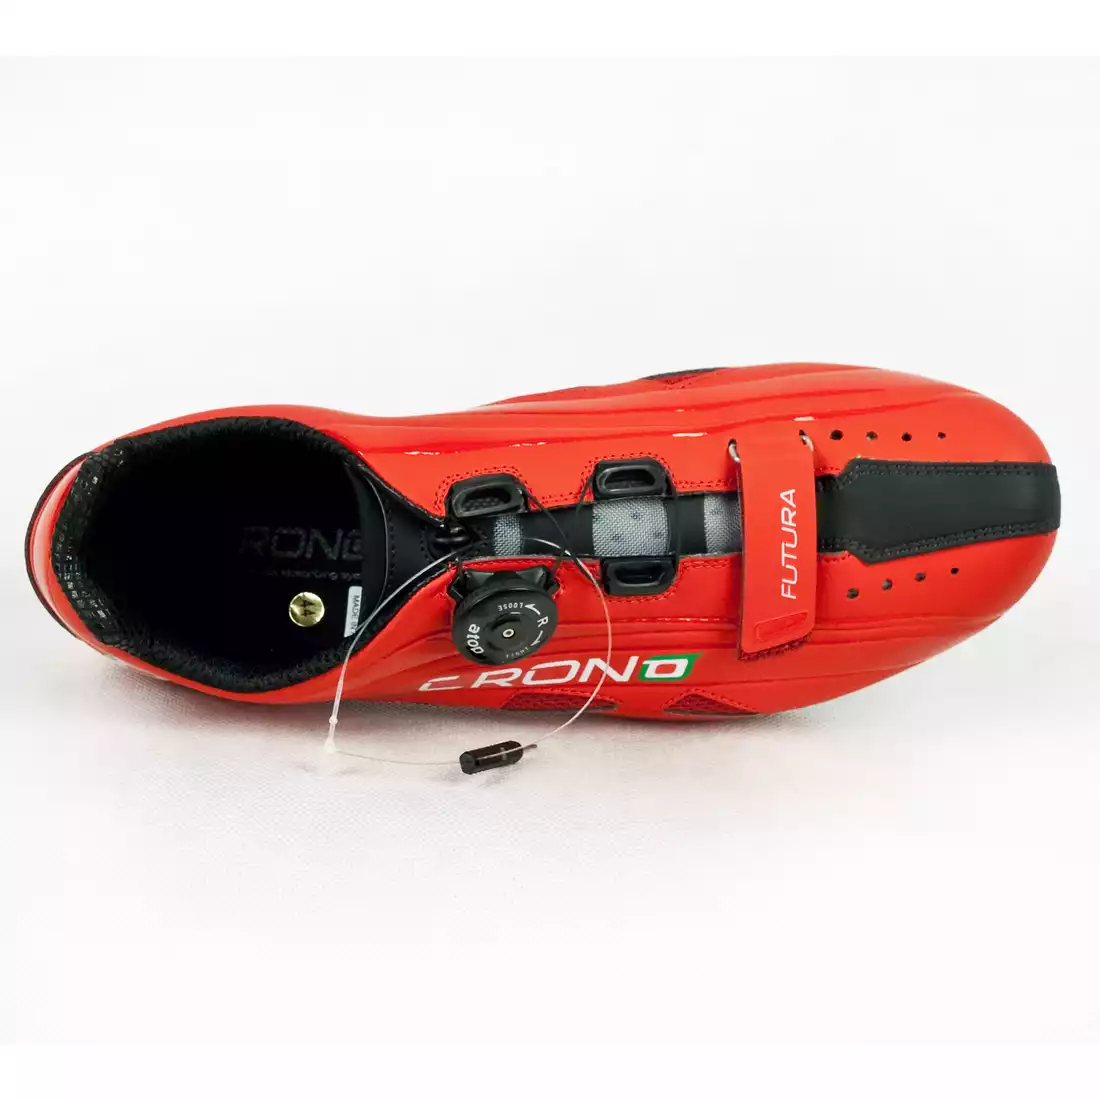 CRONO FUTURA NYLON - buty rowerowe szosowe - kolor: Czerwony